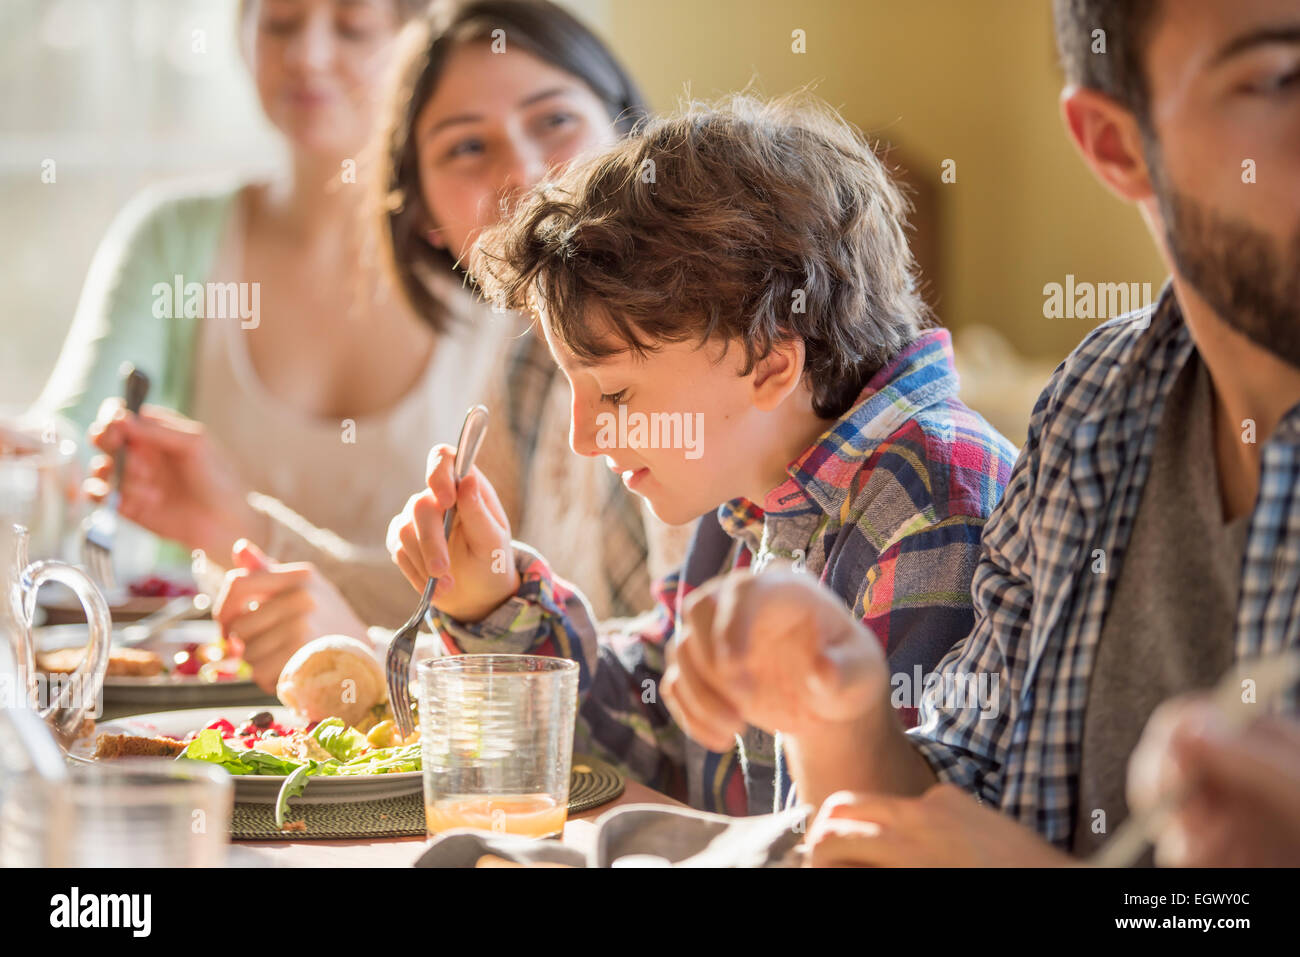 Un groupe de personnes, adultes et enfants, assis autour d'une table pour un repas. Banque D'Images